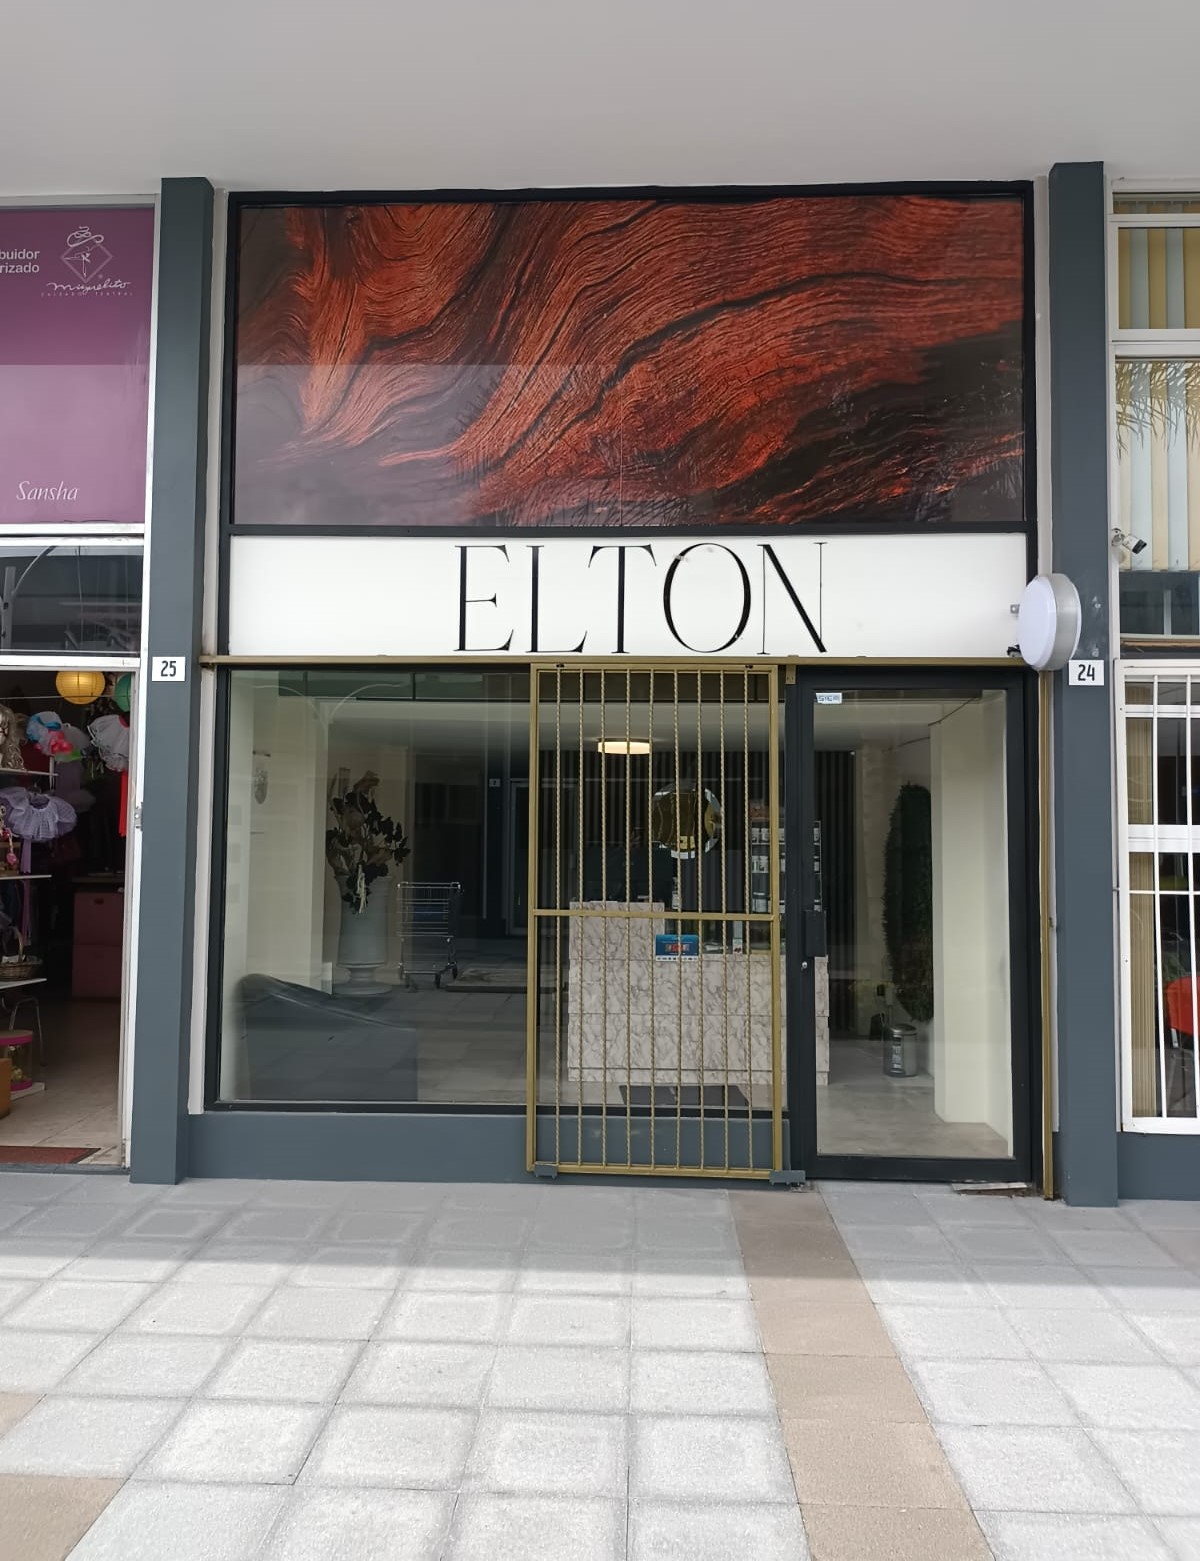 entrada a local comercial con nombre elton